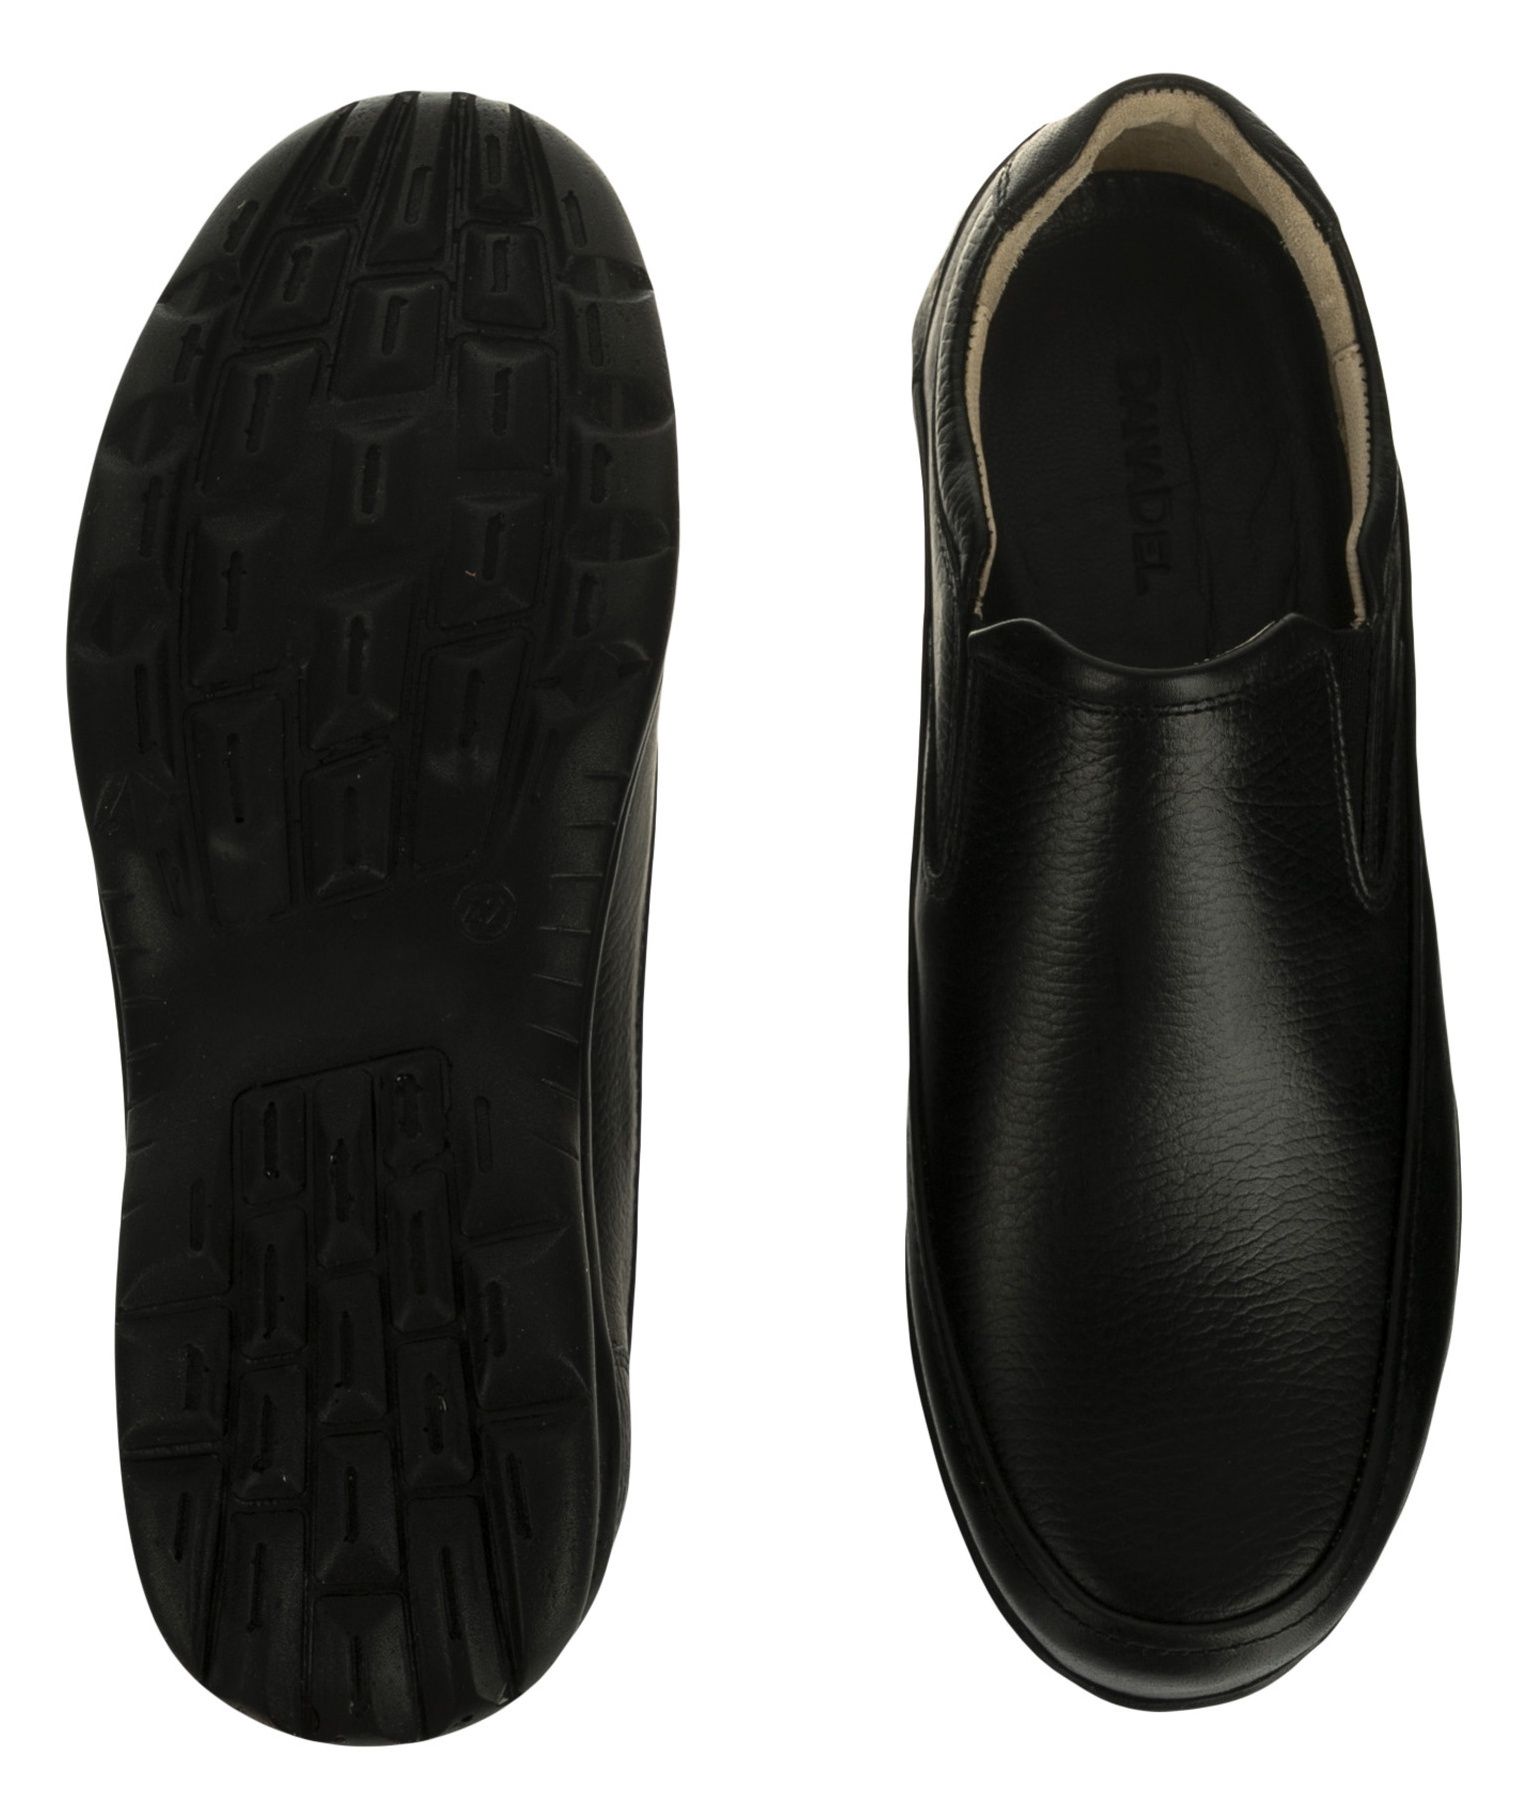 کفش روزمره مردانه دانادل مدل 7715A503101 - مشکی - 3